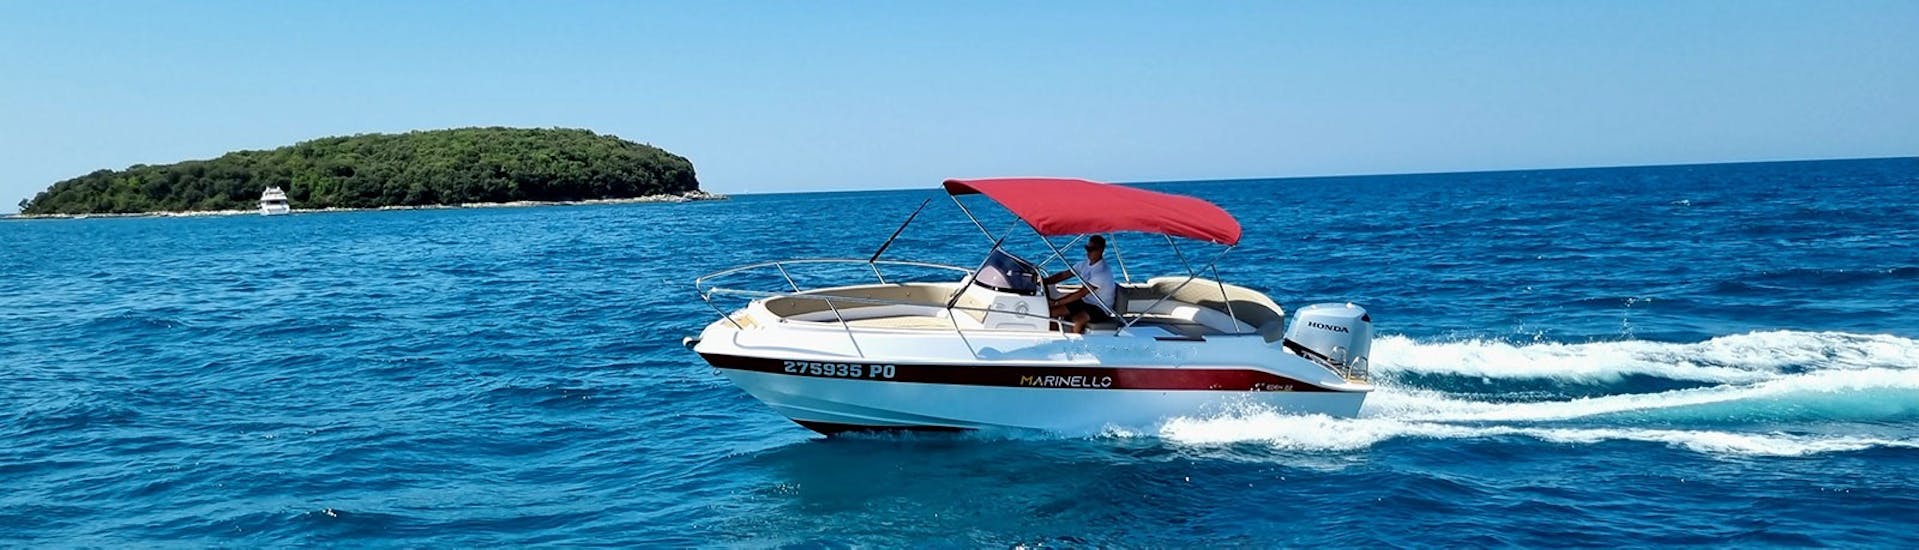 Le bateau à moteur utilisé pour la location de bateau à Funtana près de Poreč avec Funtana Charter Istria.